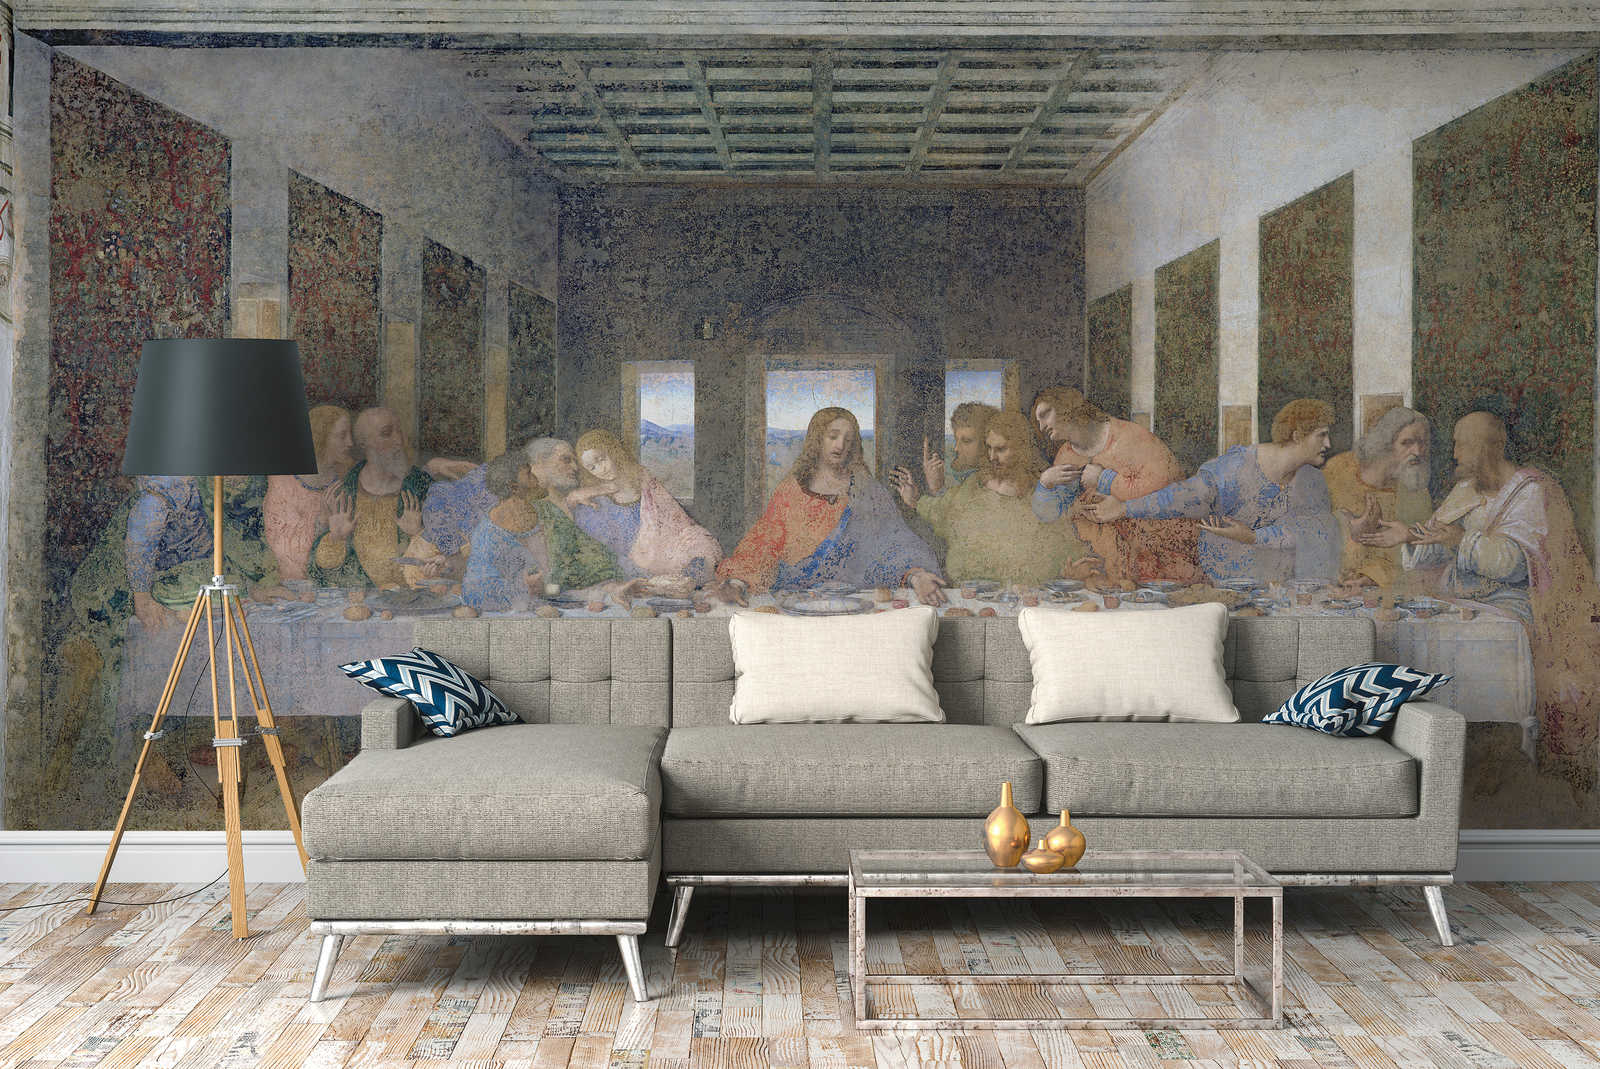             Het Laatste Avondmaal" muurschildering van Leonardo da Vinci
        